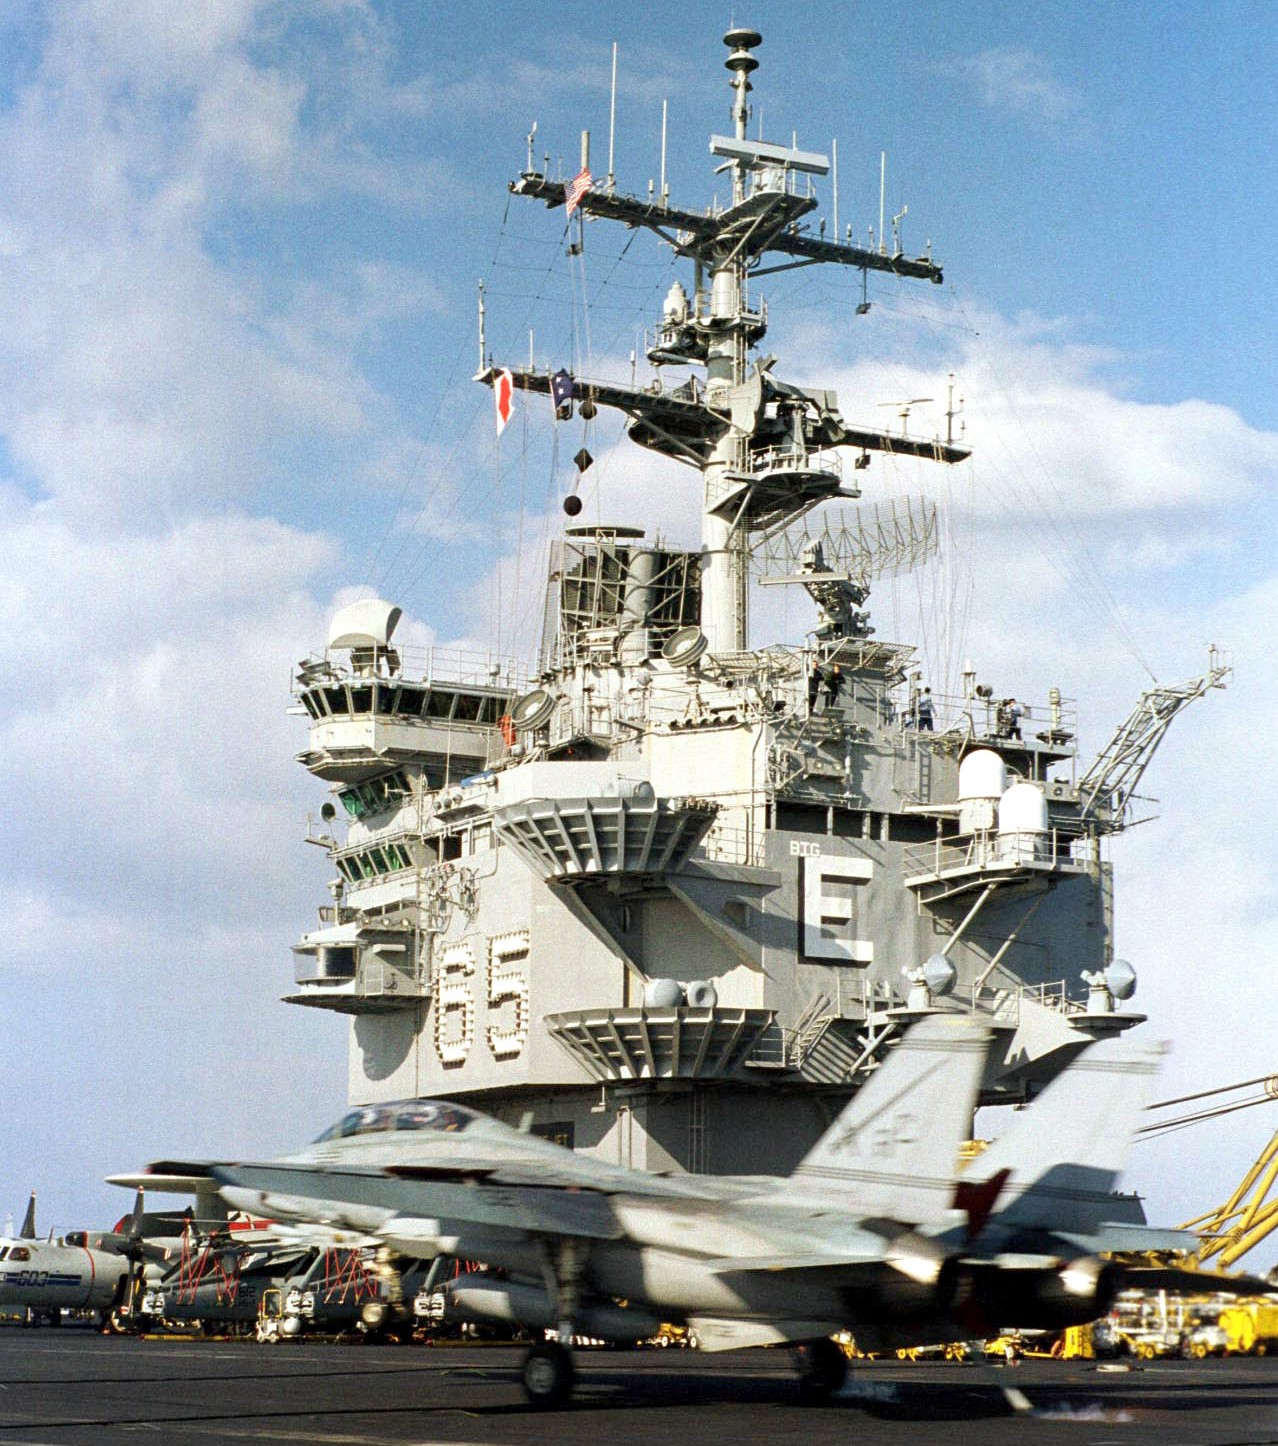 cvn-65 uss enterprise aircraft carrier air wing cvw-3 us navy southern watch 1999 77